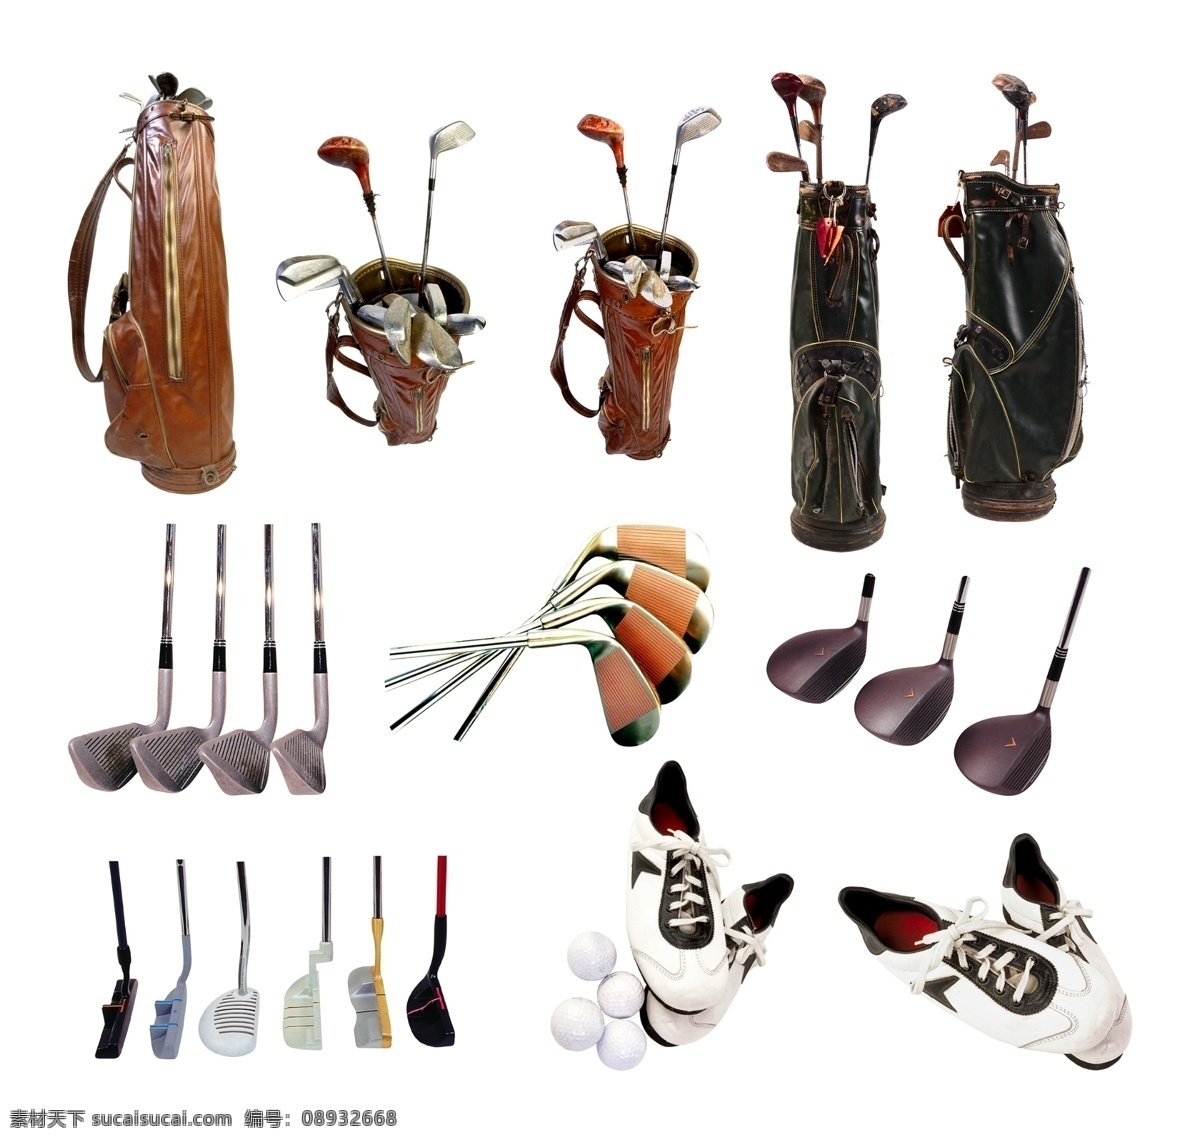 高尔夫用具 高尔夫球袋 高尔夫球杆 球杆 球袋 高尔夫 球具 高尔夫装备 金属 铁杆 体育 运动 文化艺术 背景分层 白色背景 分层